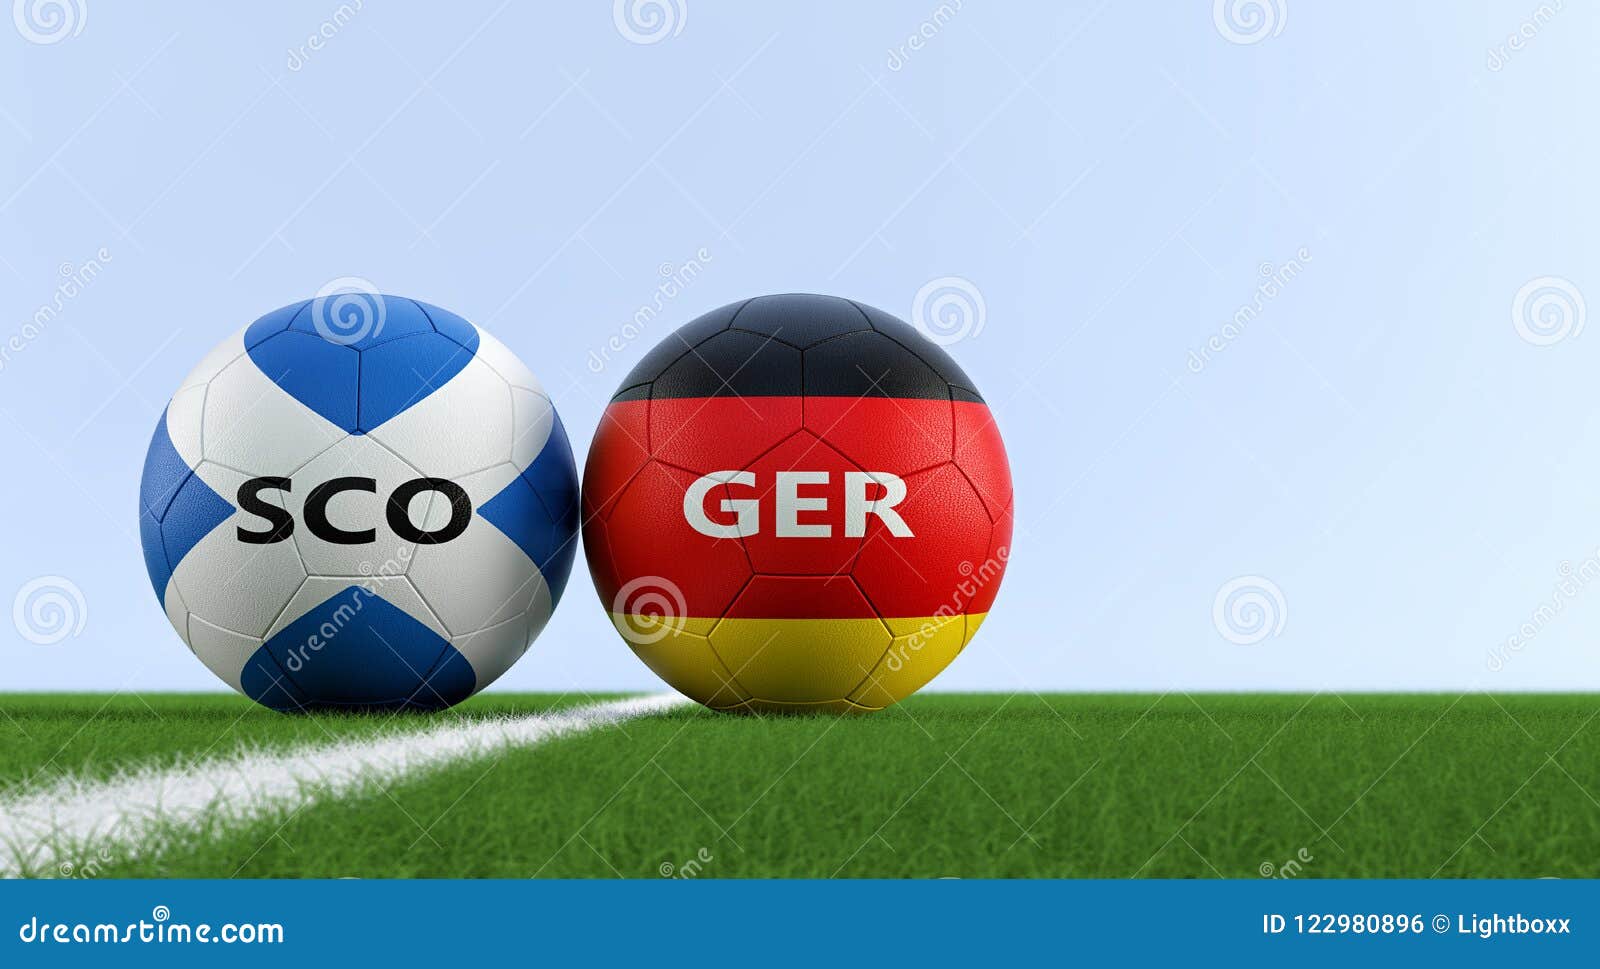 Перевод футбольный на немецкий